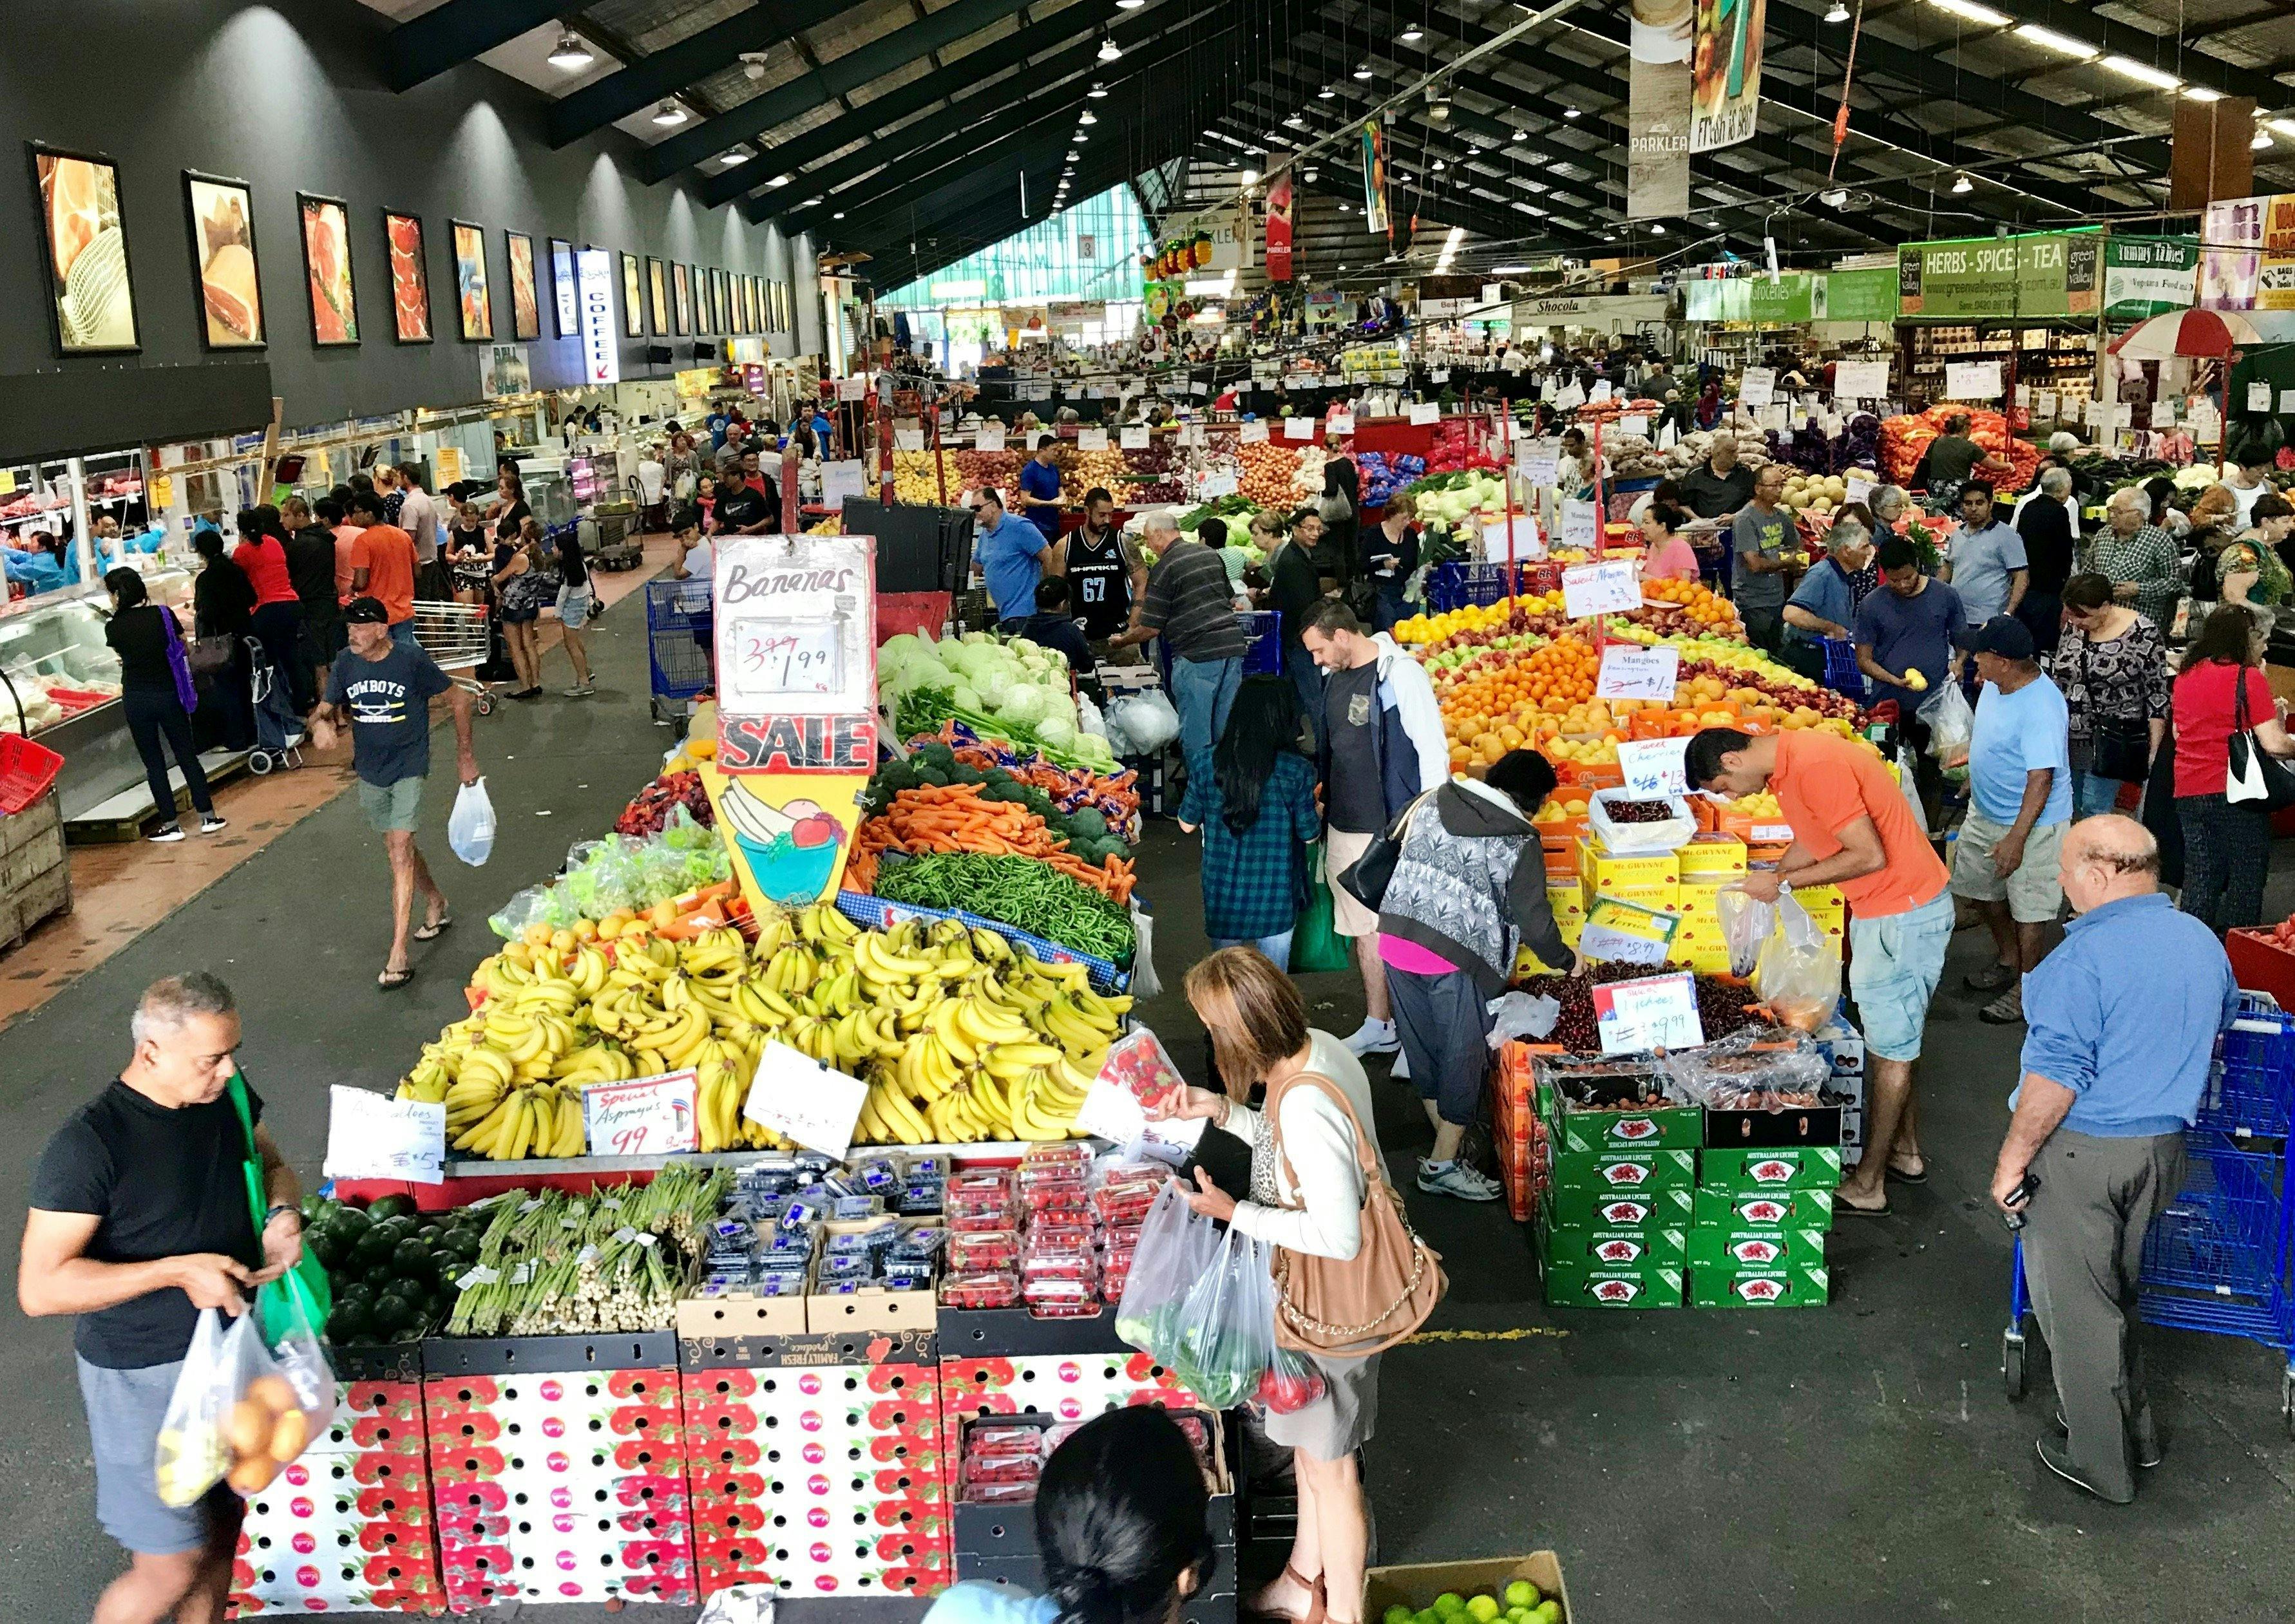 Parklea Markets